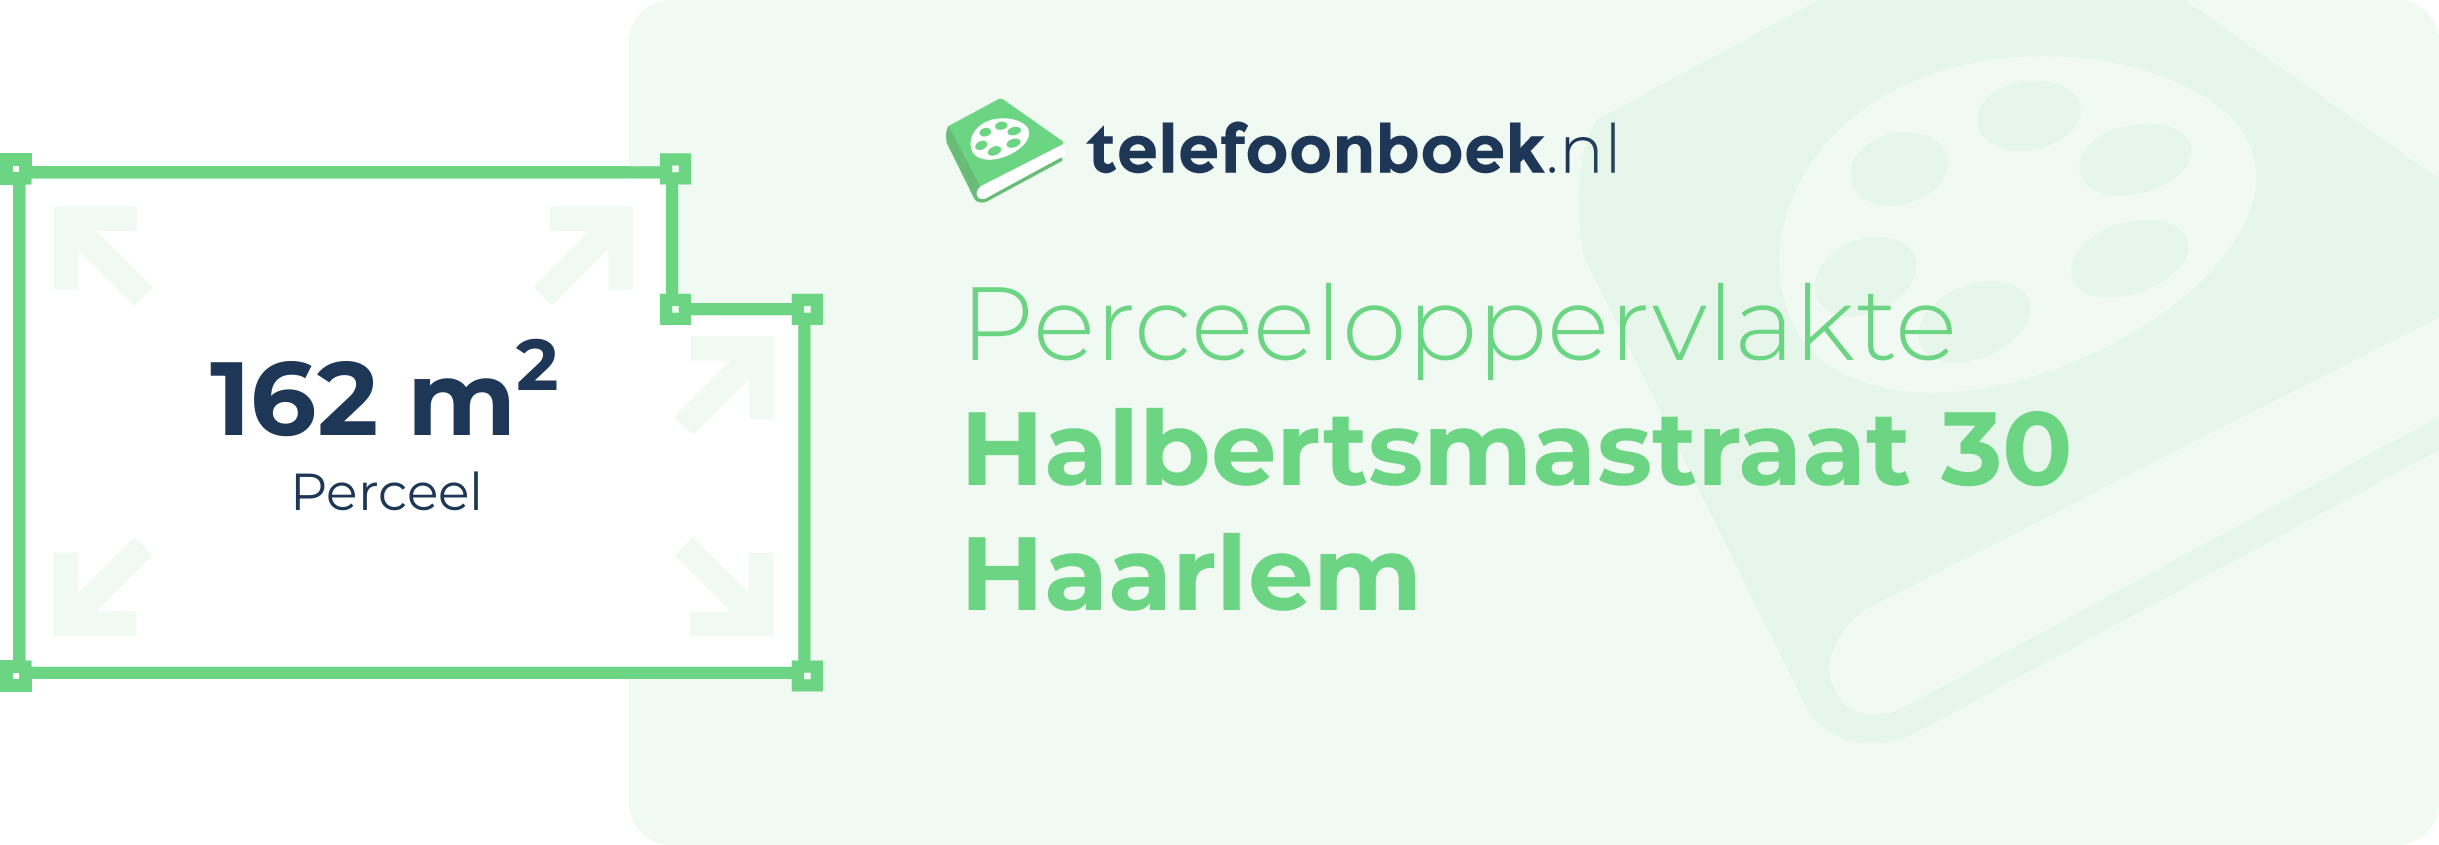 Perceeloppervlakte Halbertsmastraat 30 Haarlem